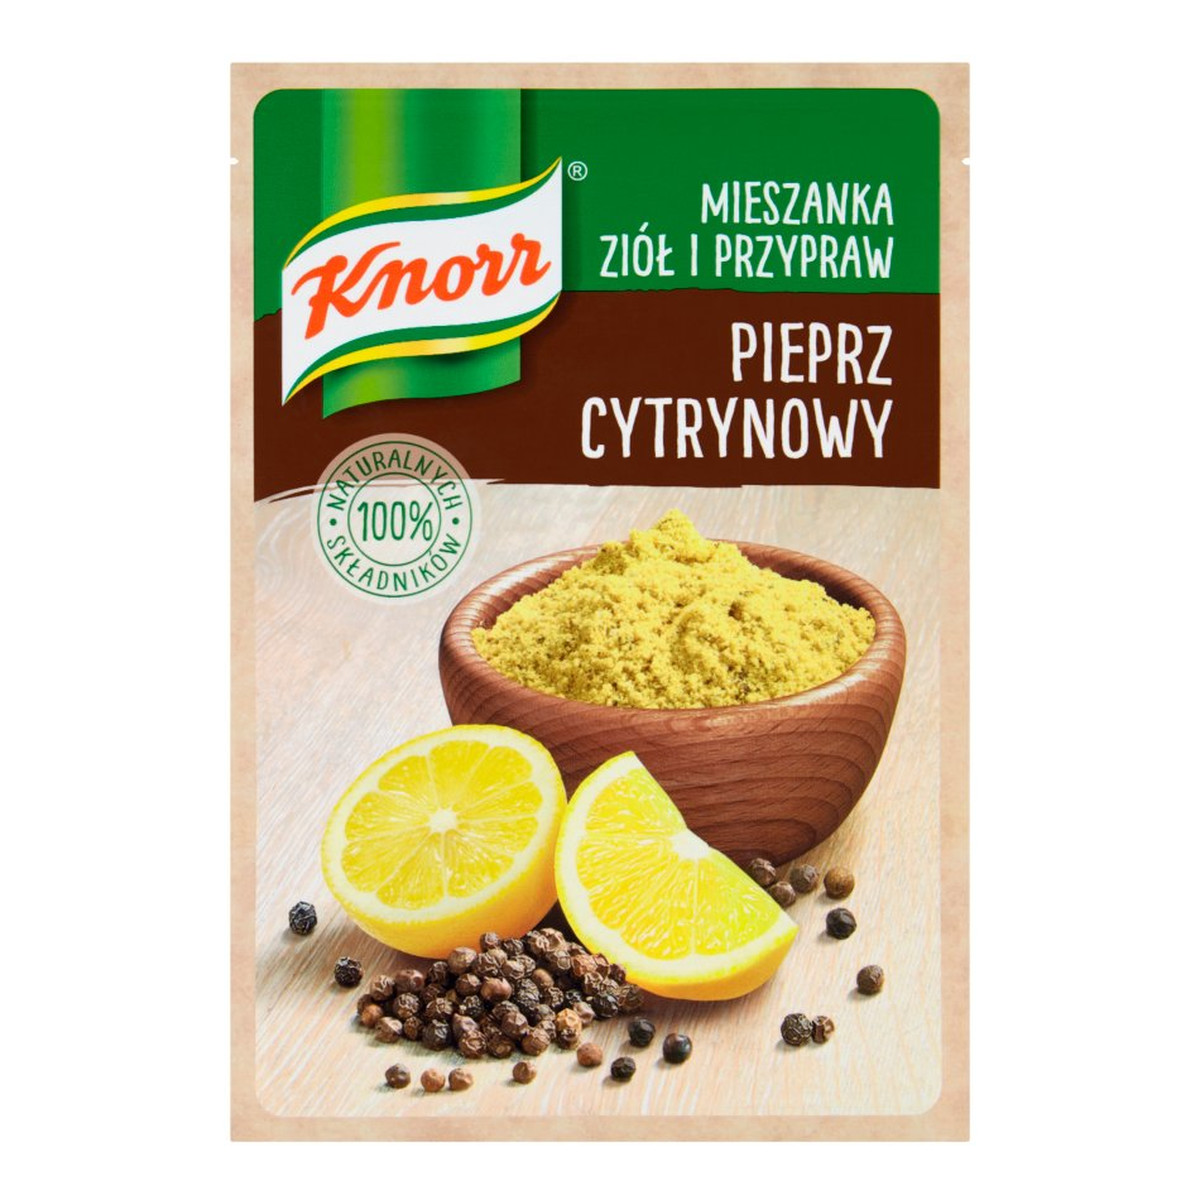 Knorr Mieszanka ziół i przypraw pieprz cytrynowy 15g